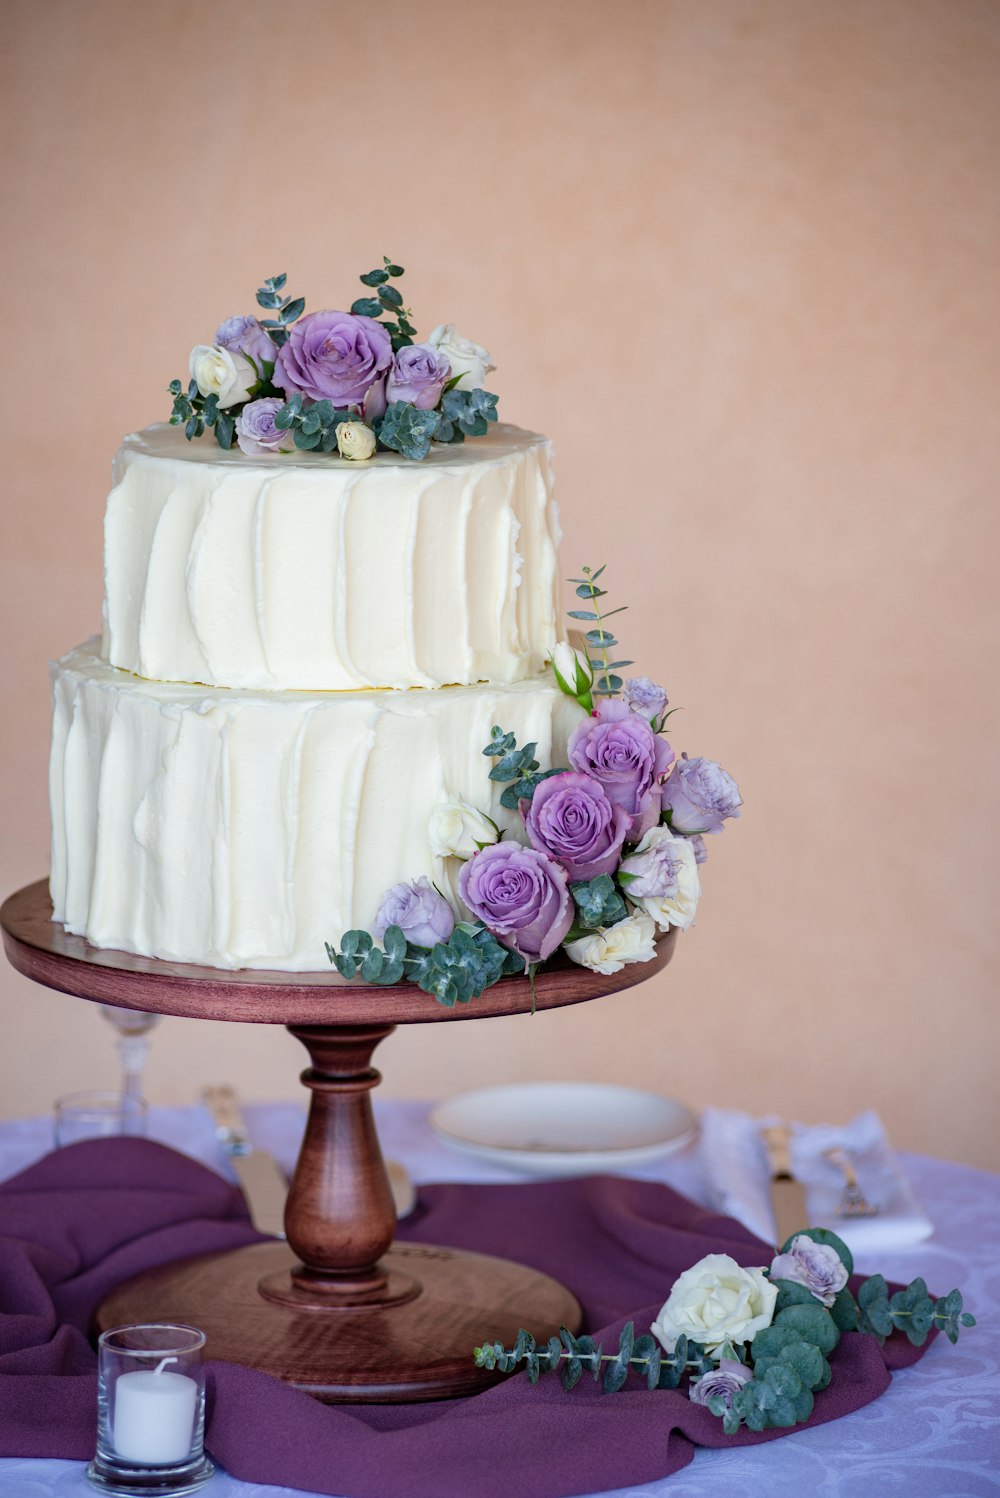 위에 분홍색 장미가 달린 흰색 케이크